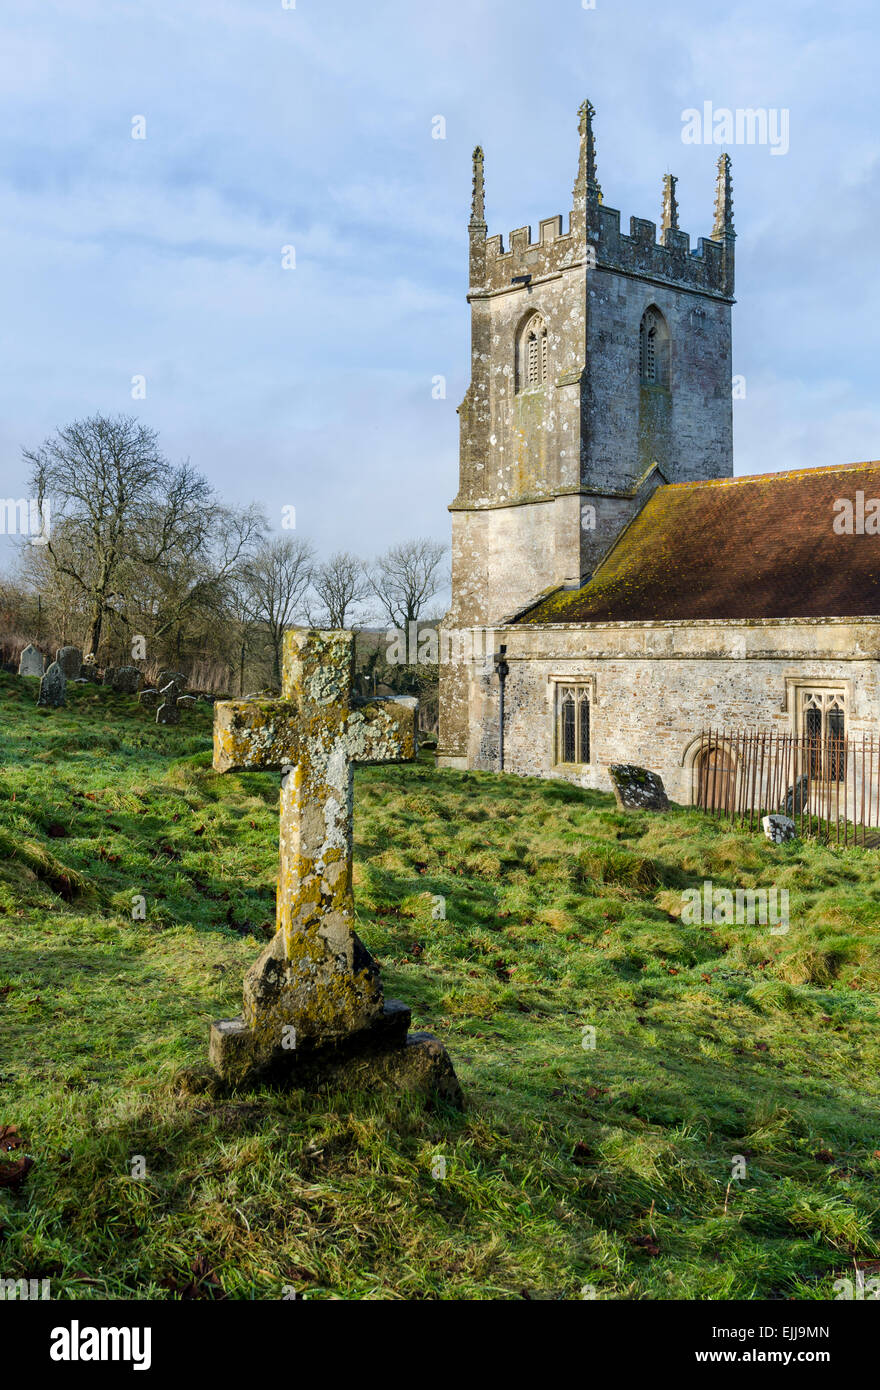 L'église paroissiale de St Giles dans le village fantôme de Imber dans la plaine de Salisbury, Wiltshire, Angleterre, Royaume-Uni. Banque D'Images